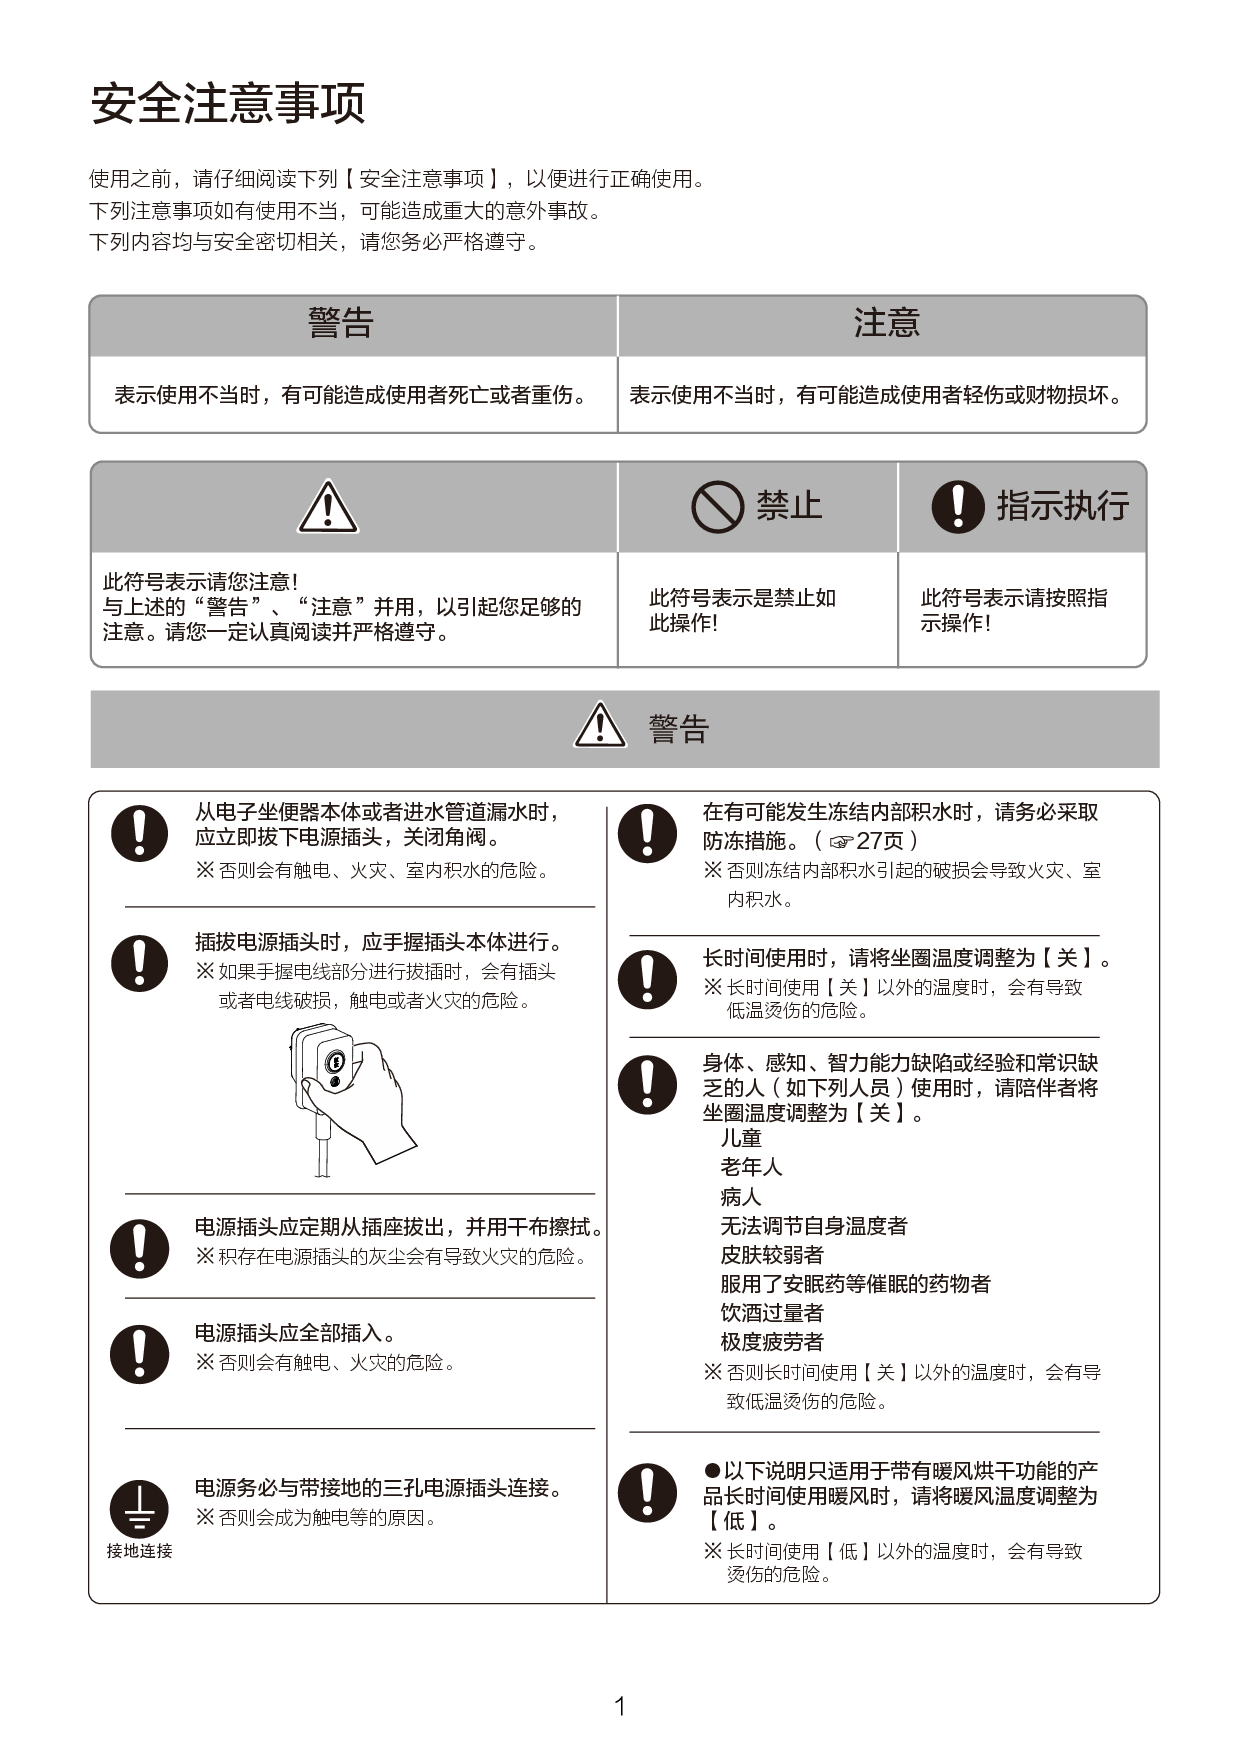 东芝 Toshiba T3-83B6, T3-R5B1 使用说明书 第1页